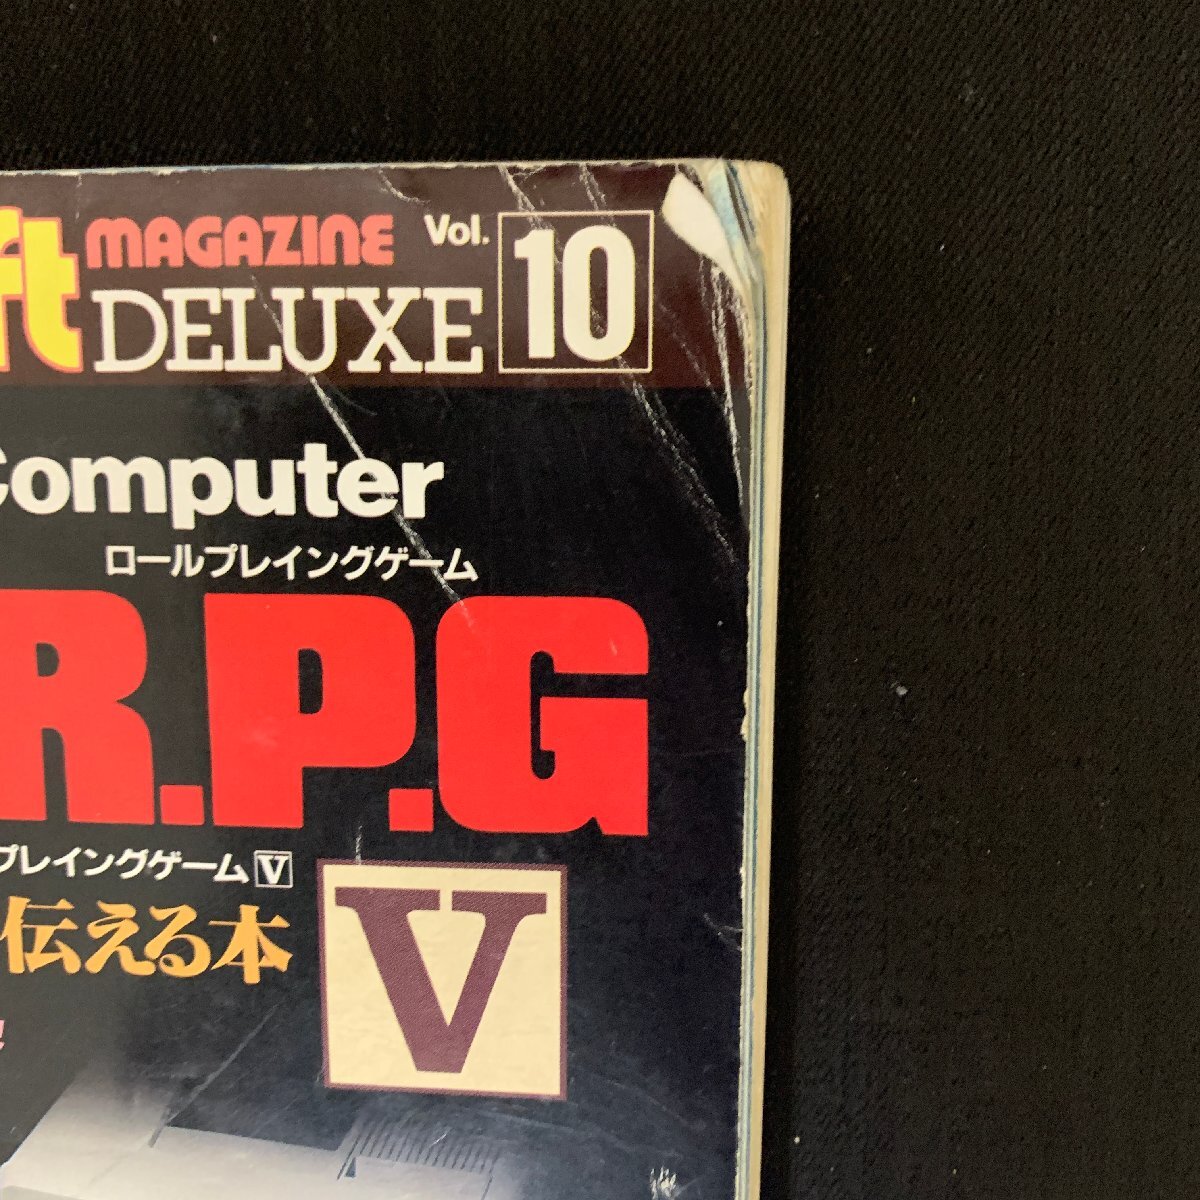 L057 радиоволны газета фирма microcomputer BASIC журнал отдельный выпуск AVG&RPG Ⅴ эпоха Heisei 2 год 2 месяц 28 день выпуск Showa Retro 